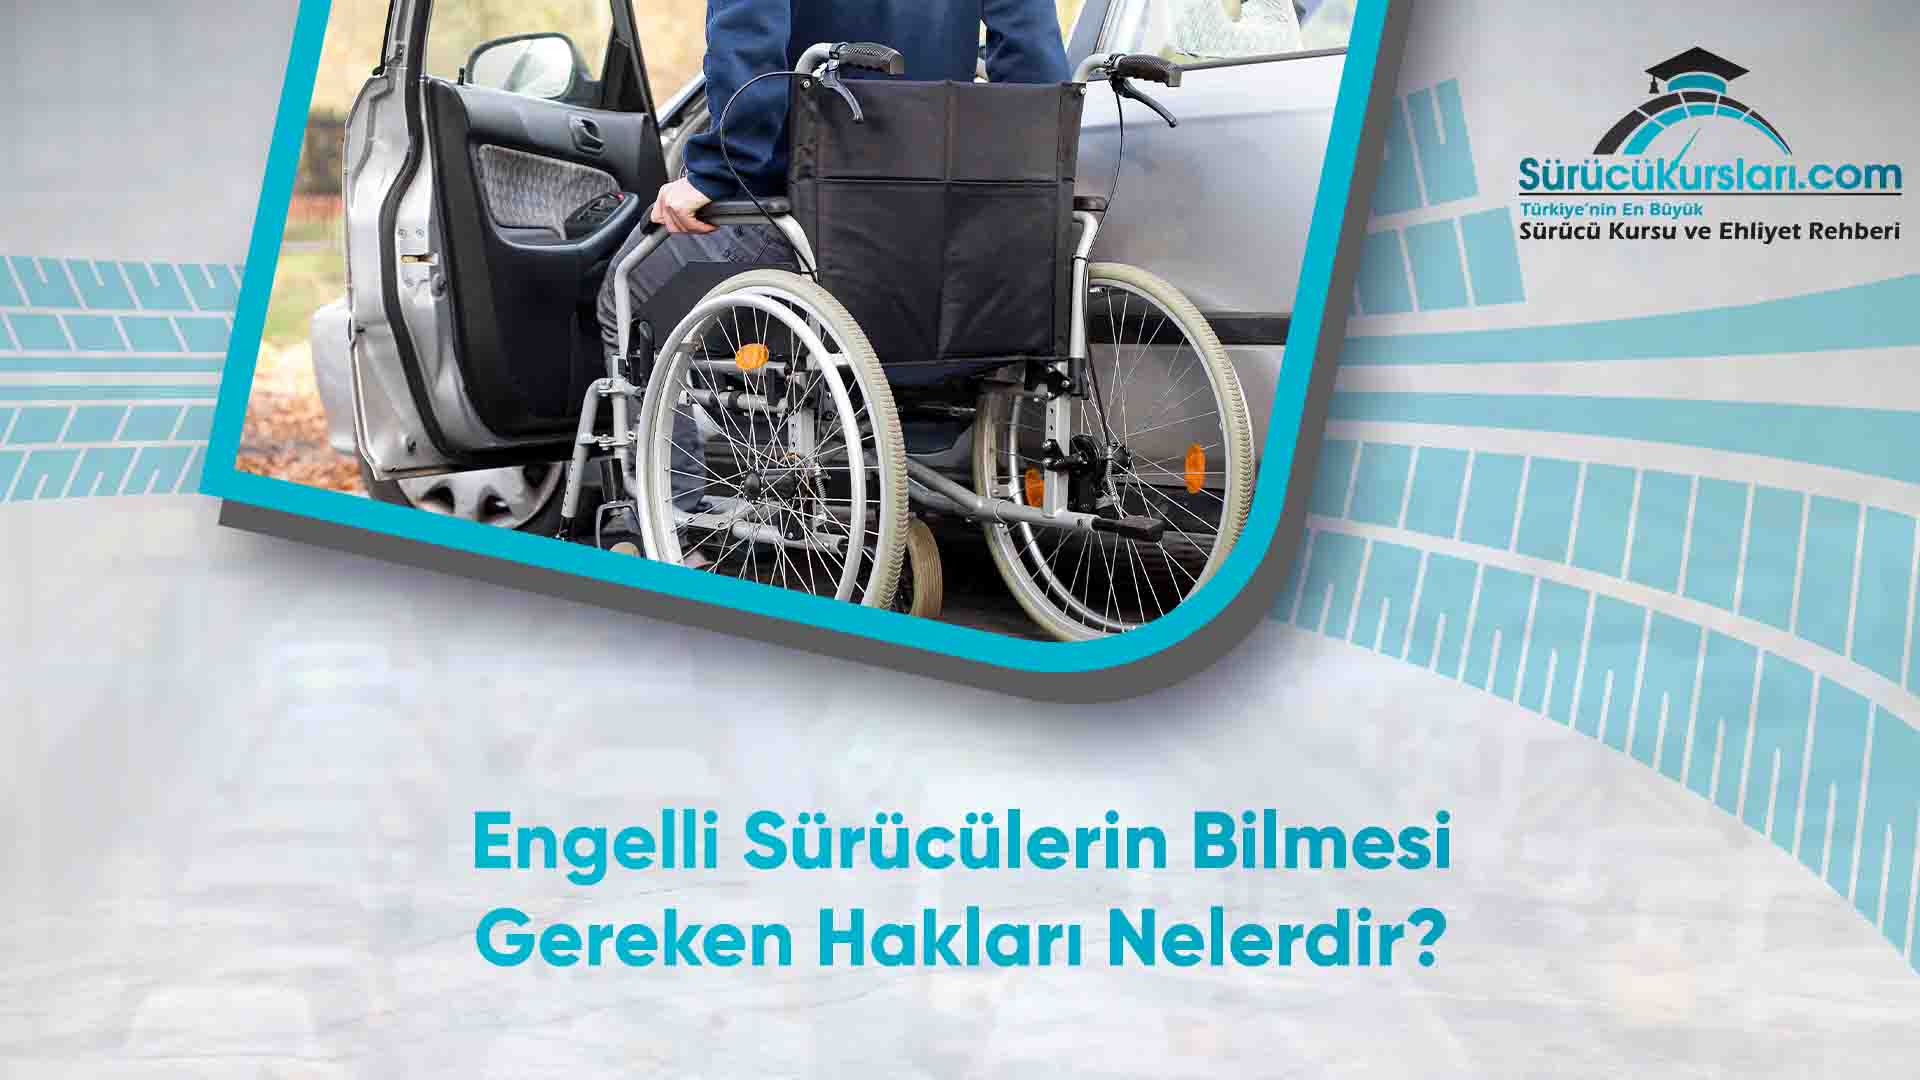 Engelli Sürücülerin Bilmesi Gereken Hakları Nelerdir